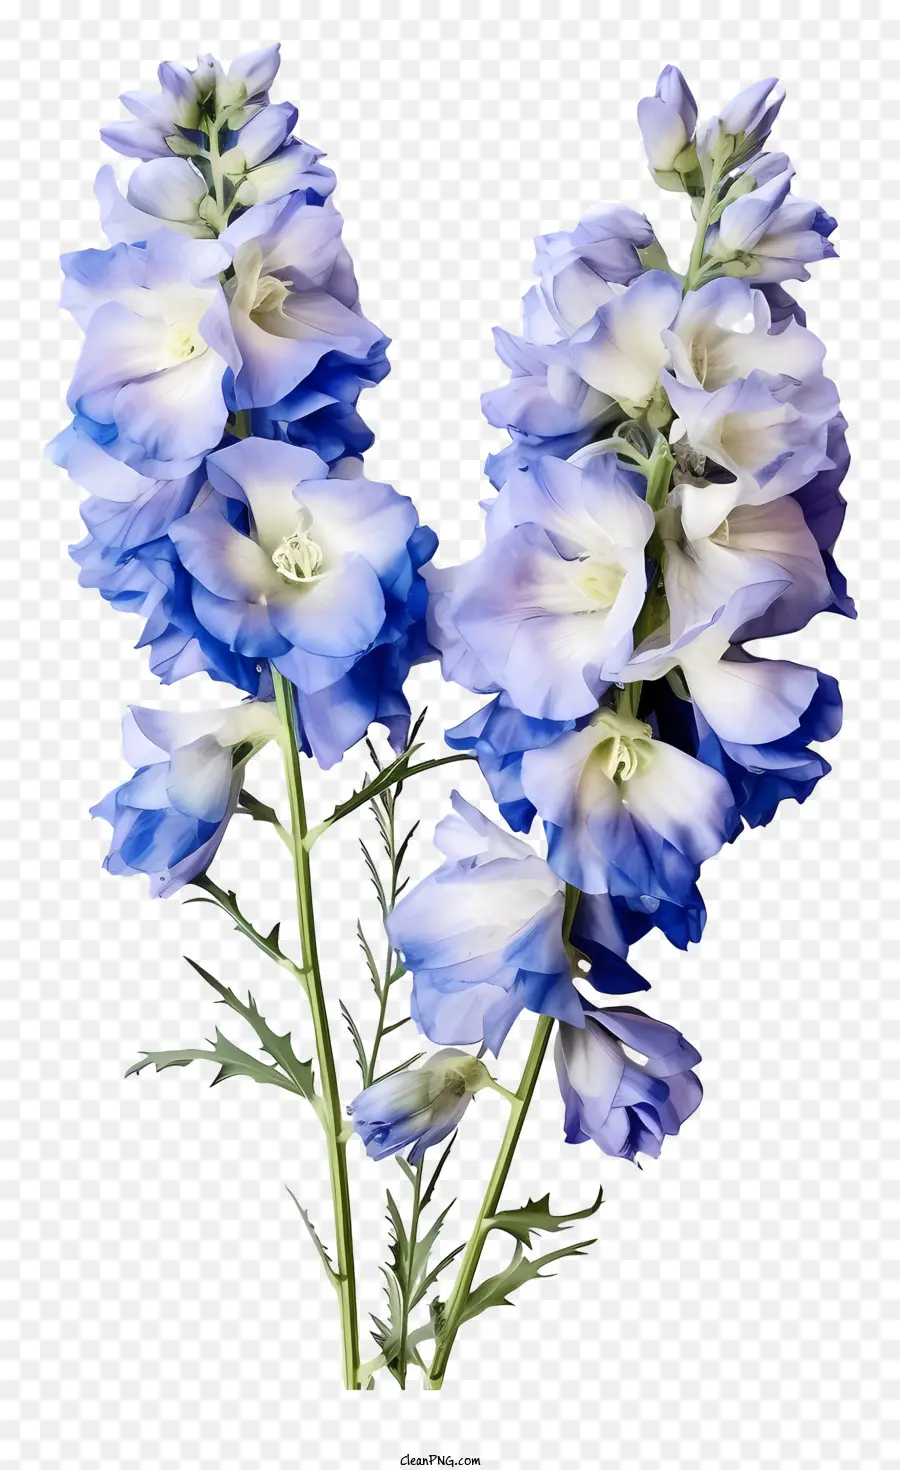 hoa màu xanh - Hoa xanh và trắng được bao quanh bởi những chiếc lá màu xanh lá cây